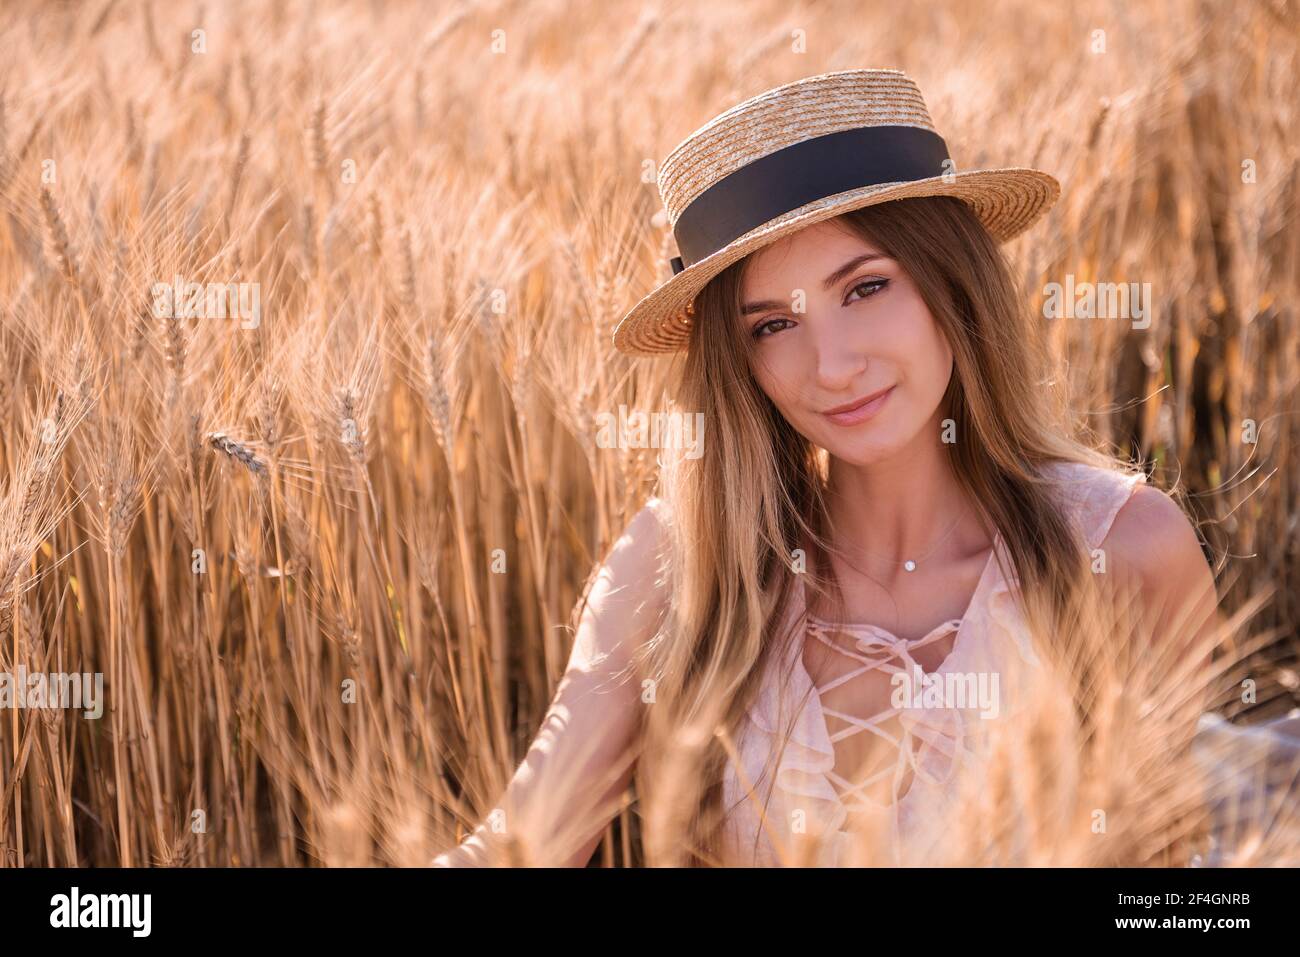 Jeune femme blonde en chapeau de paille sur le fond d'un champ d'épillets dorés de blé, seigle. Gros plan portrait d'une belle fille aux yeux bruns. W Banque D'Images